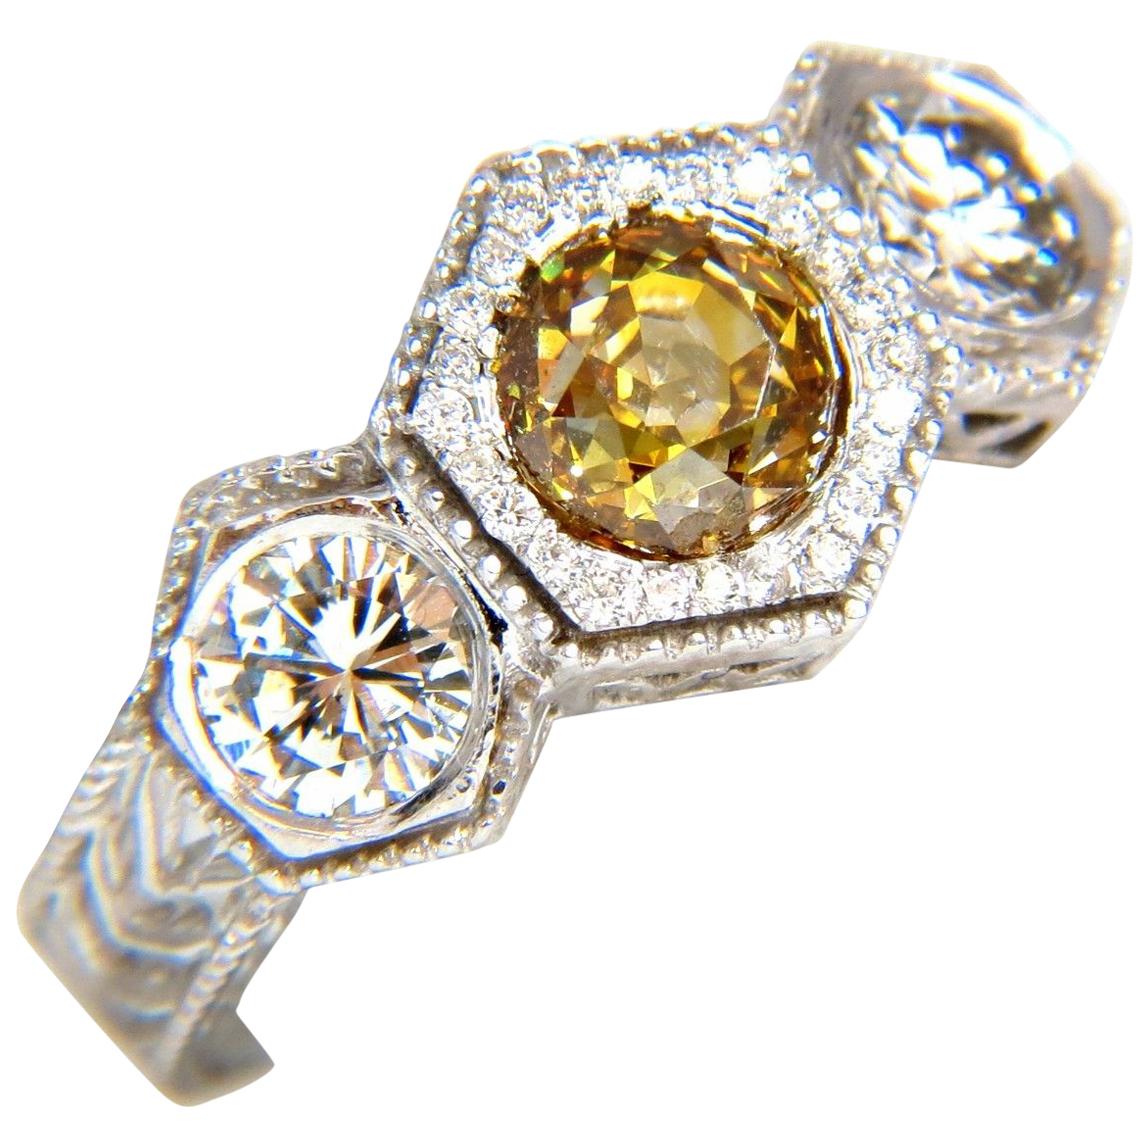 Bague couronne de style édouardien en or 18 carats avec diamants bruns jaunes fantaisie de 2,30 carats certifiés GIA